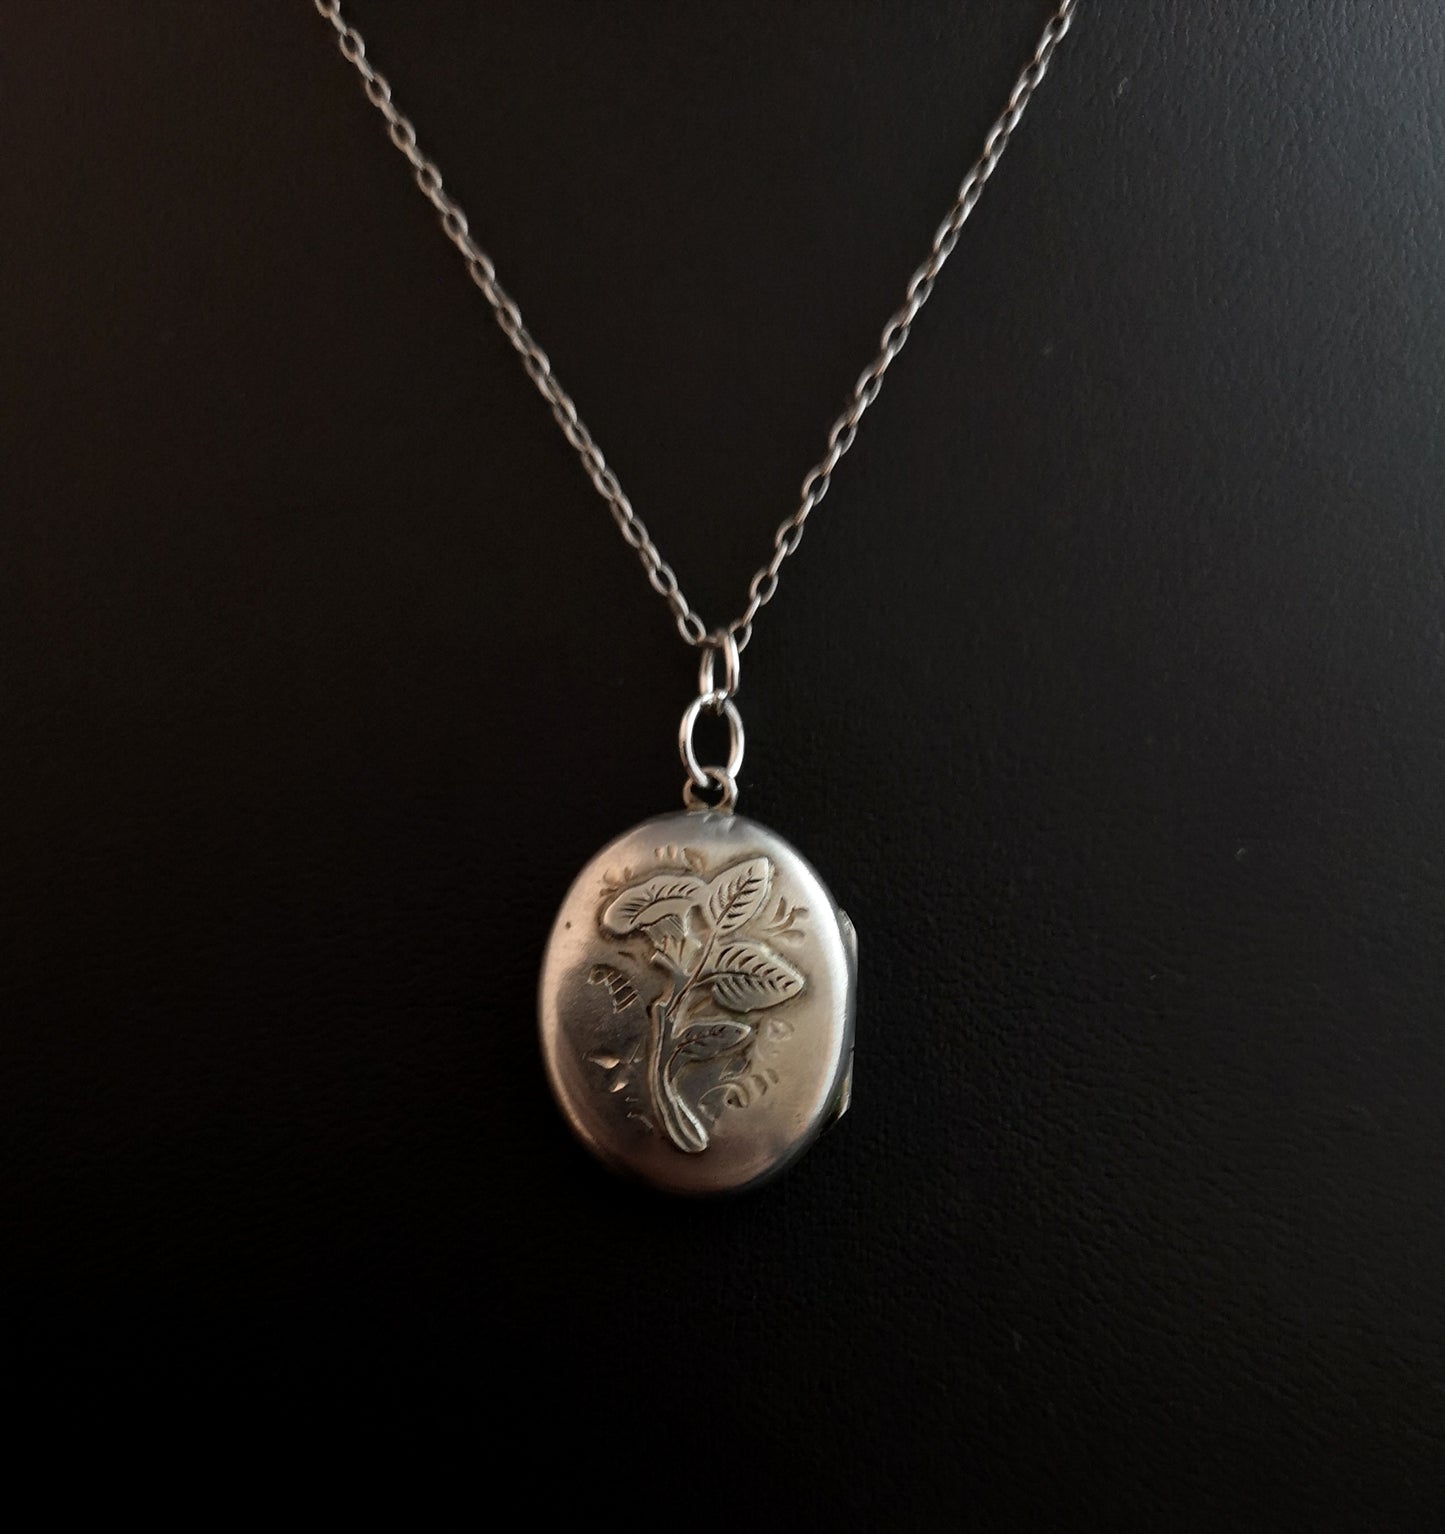 Antique Victorian silver locket, necklace